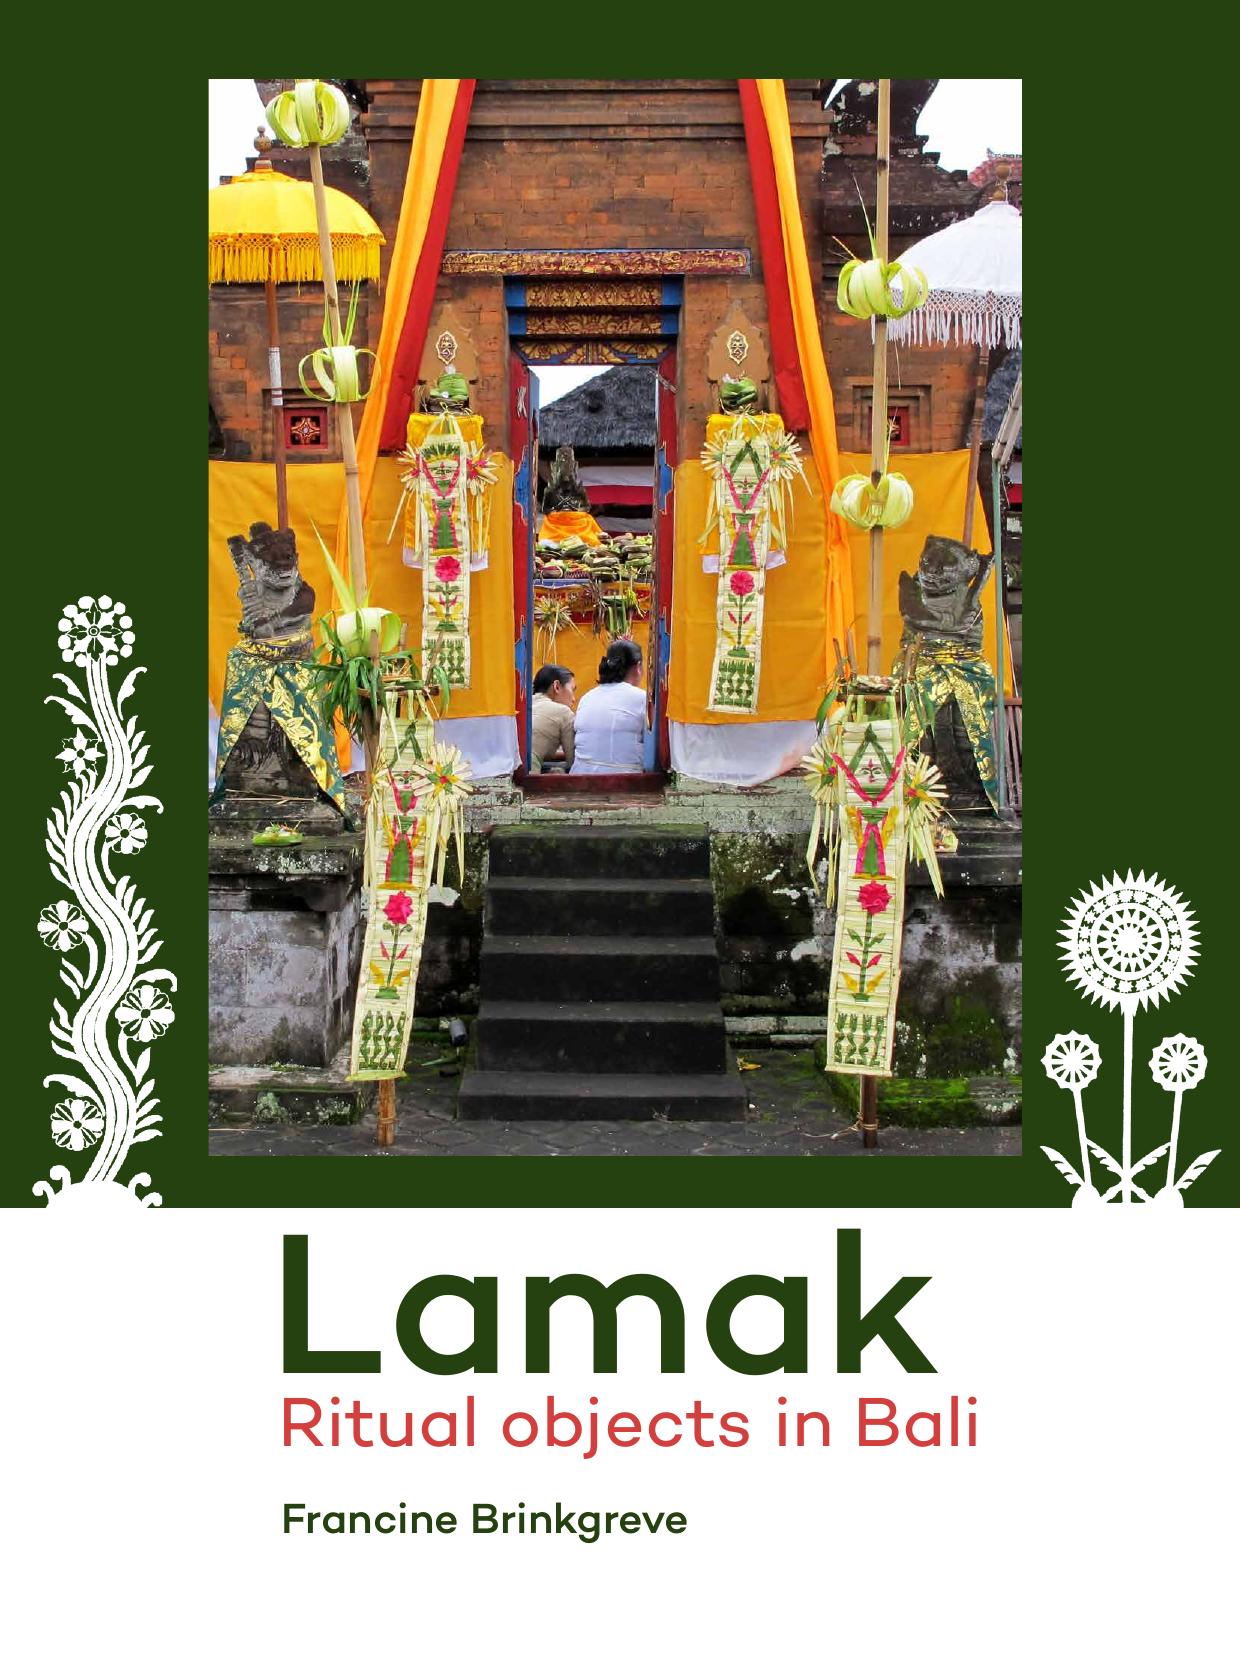 Lamak: Ritual objects in Bali by Francine Brinkgreve